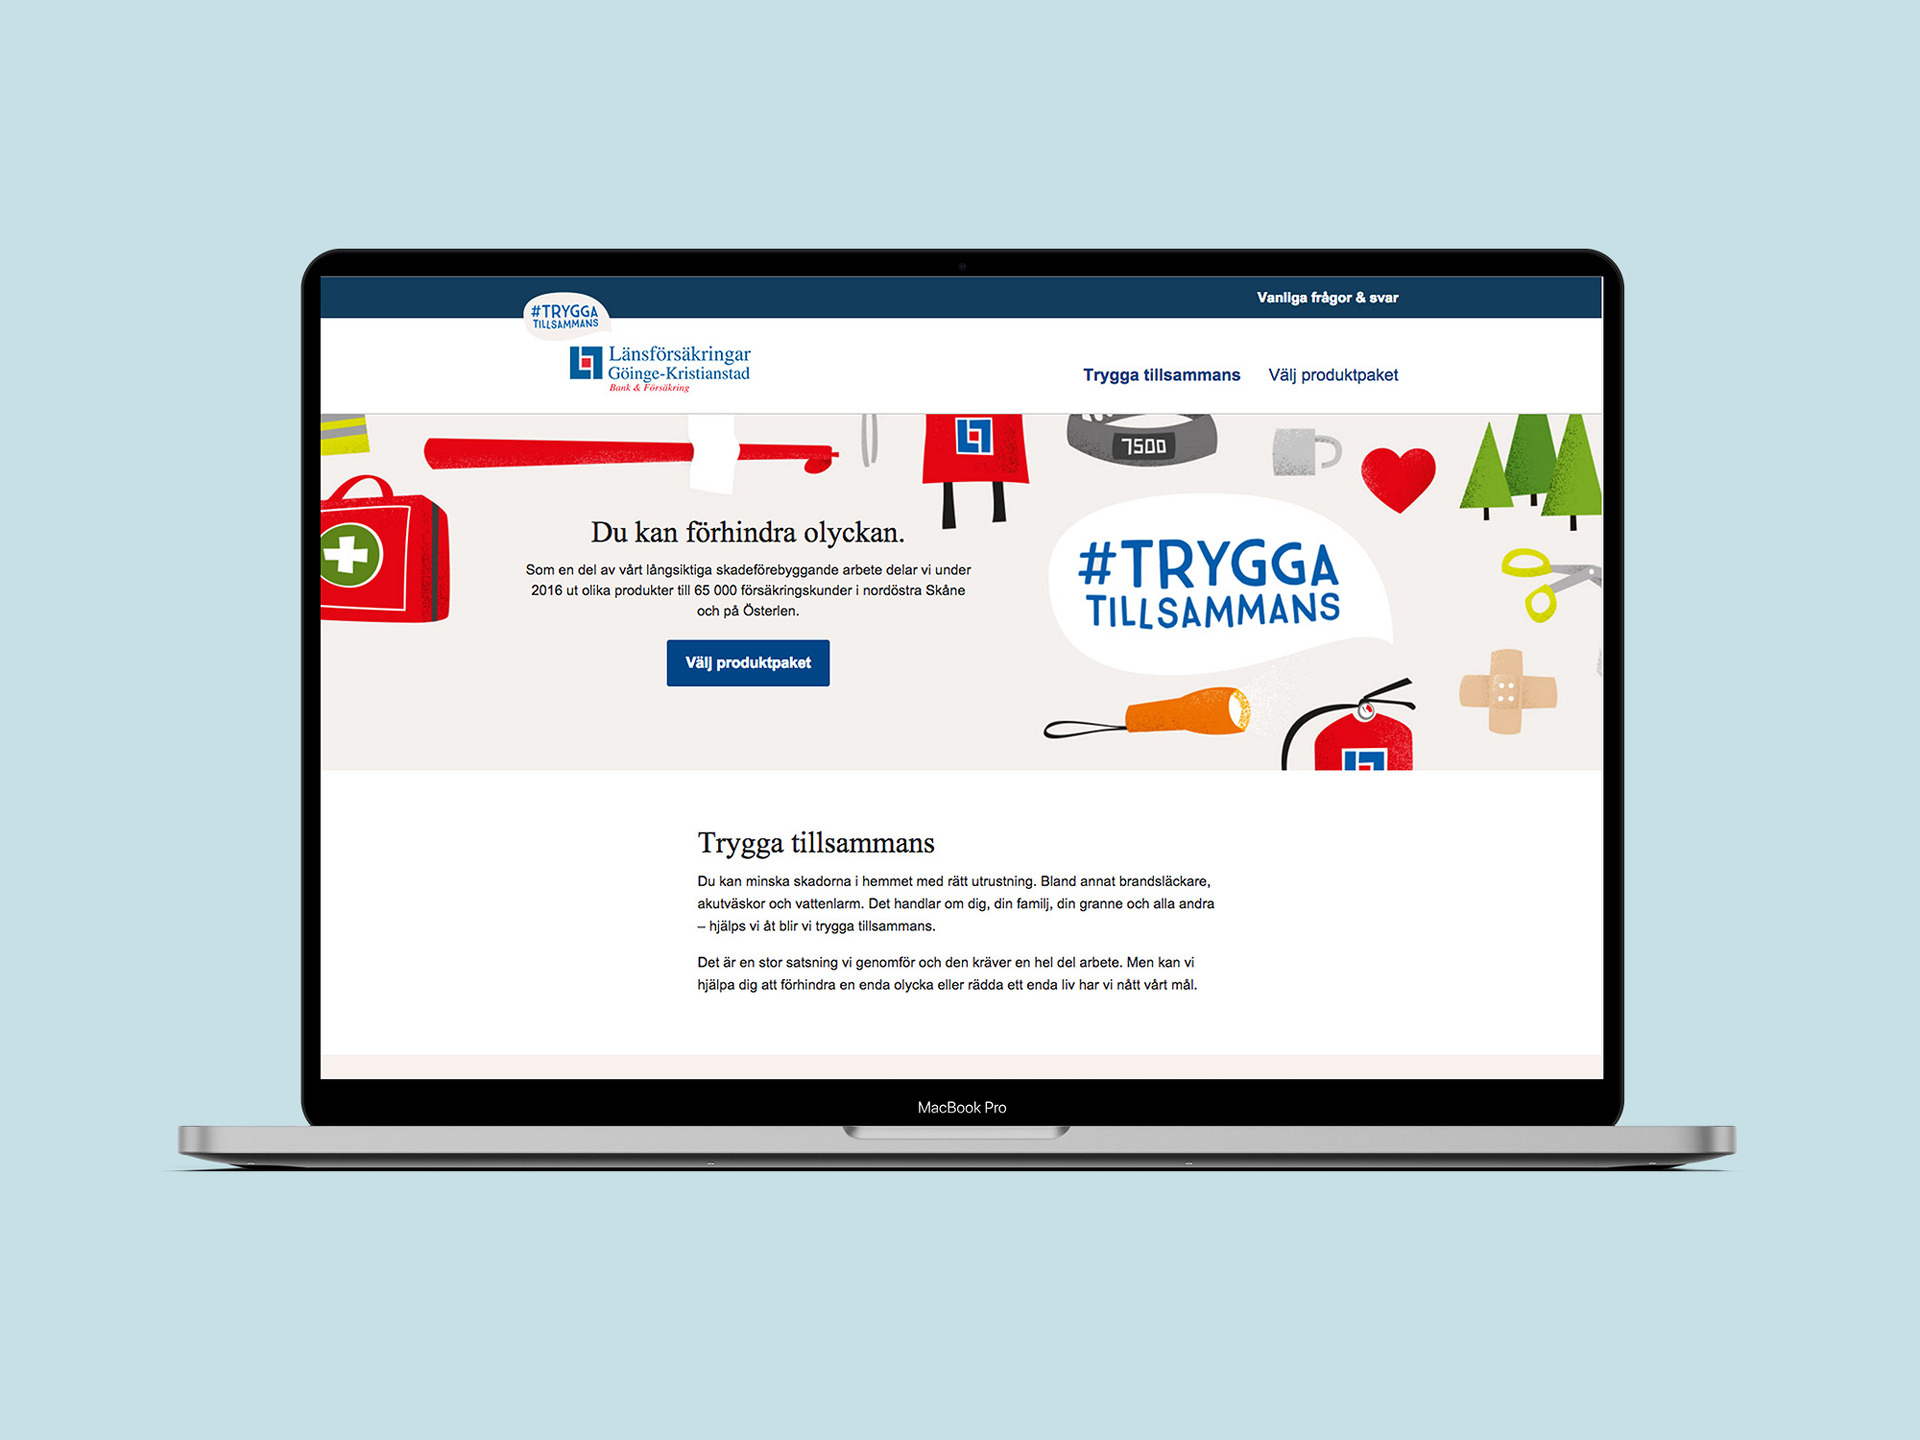 Länsförsäkringars Trygga tillsammans-kampanjhemsida